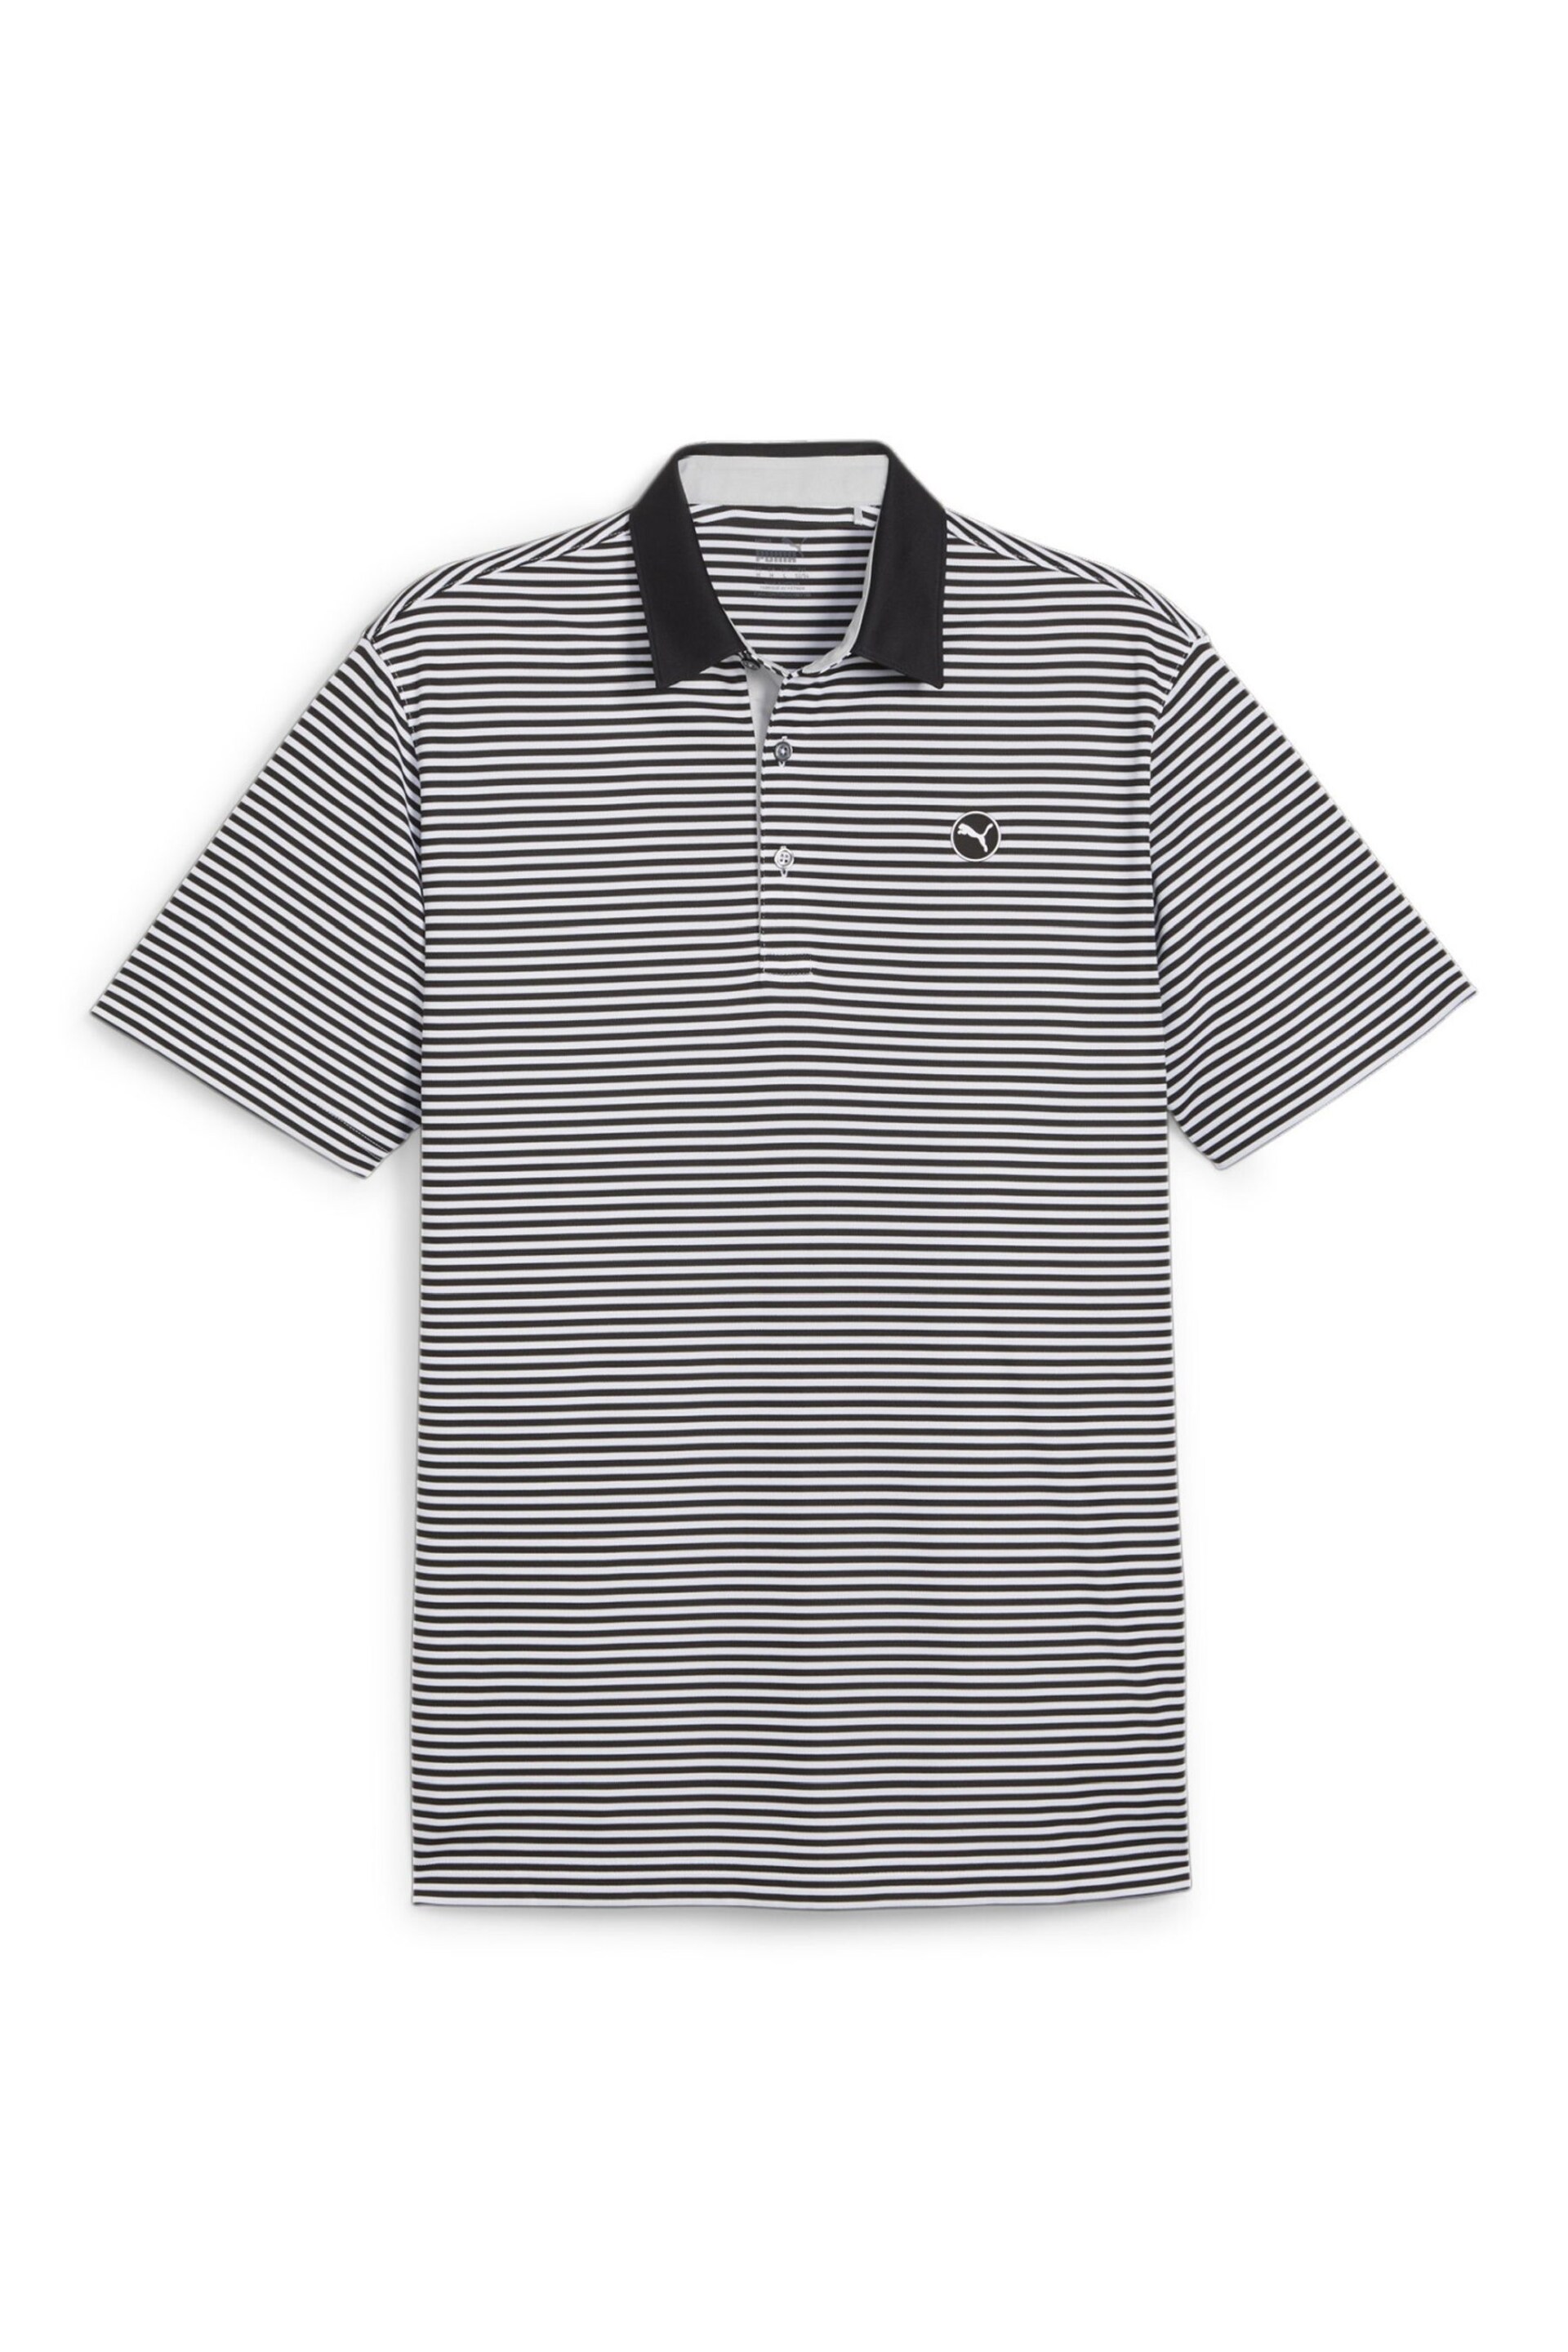 Puma Black Pure Stripe Golf Mens Polo Shirt - Image 1 of 2